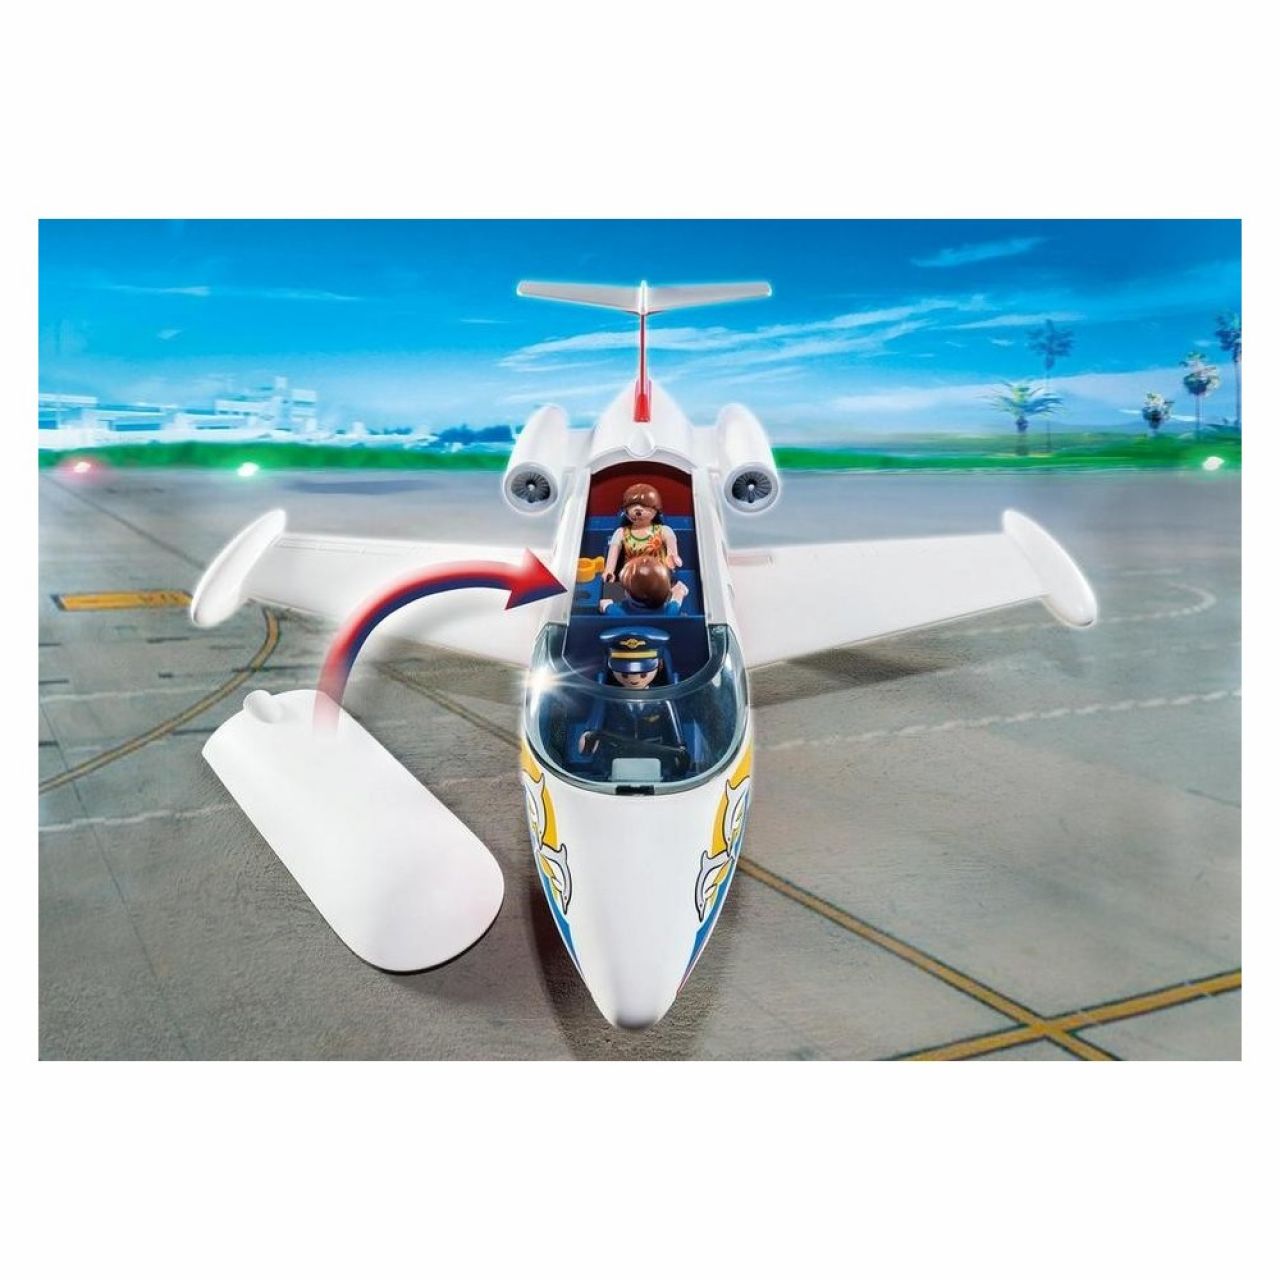 Destacada Ciudad avión de vacaciones Playmobil